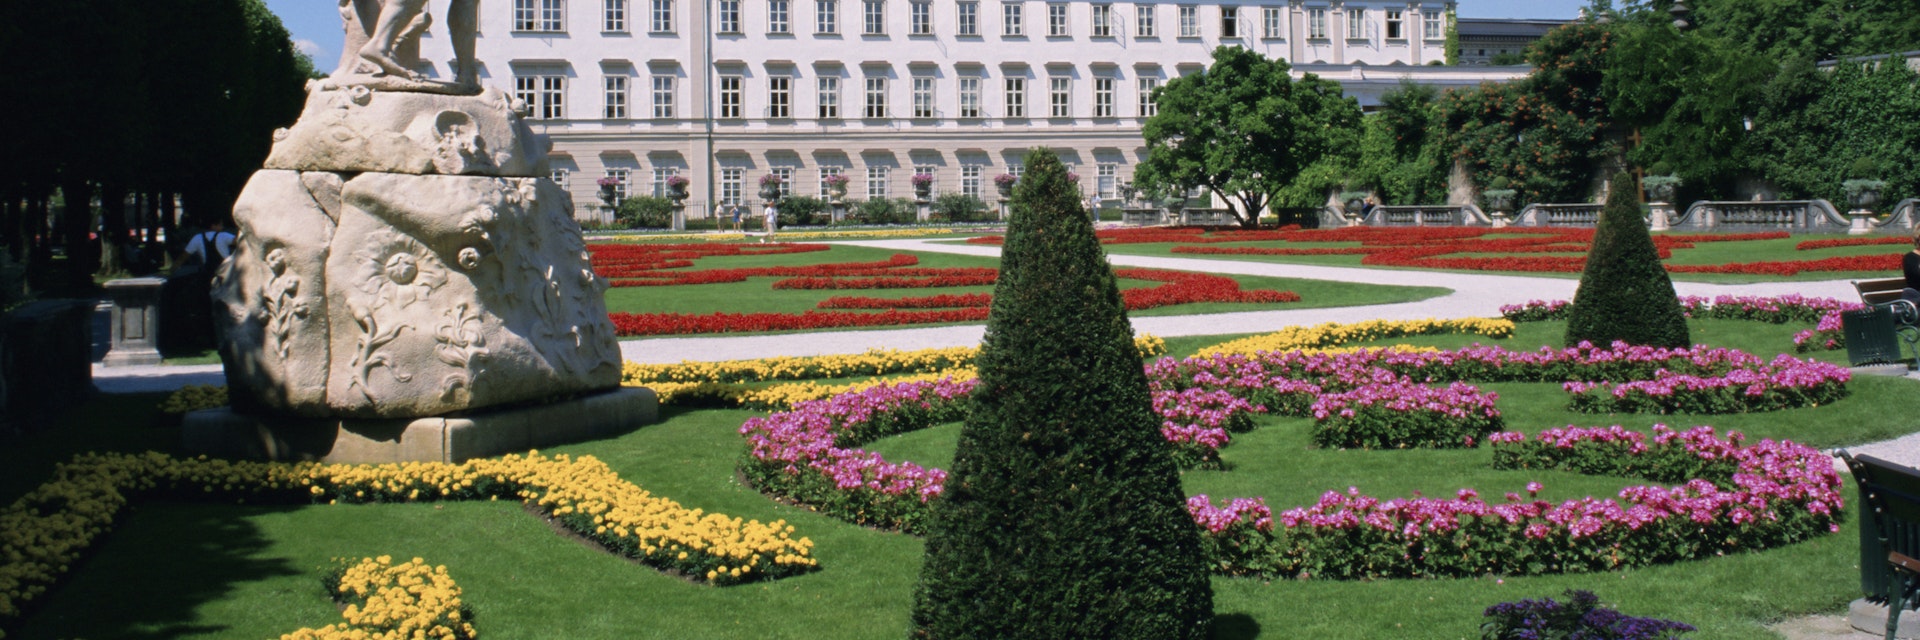 Mirabell Gardens and Schloss Mirabell, Salzburg, Austria, Europe